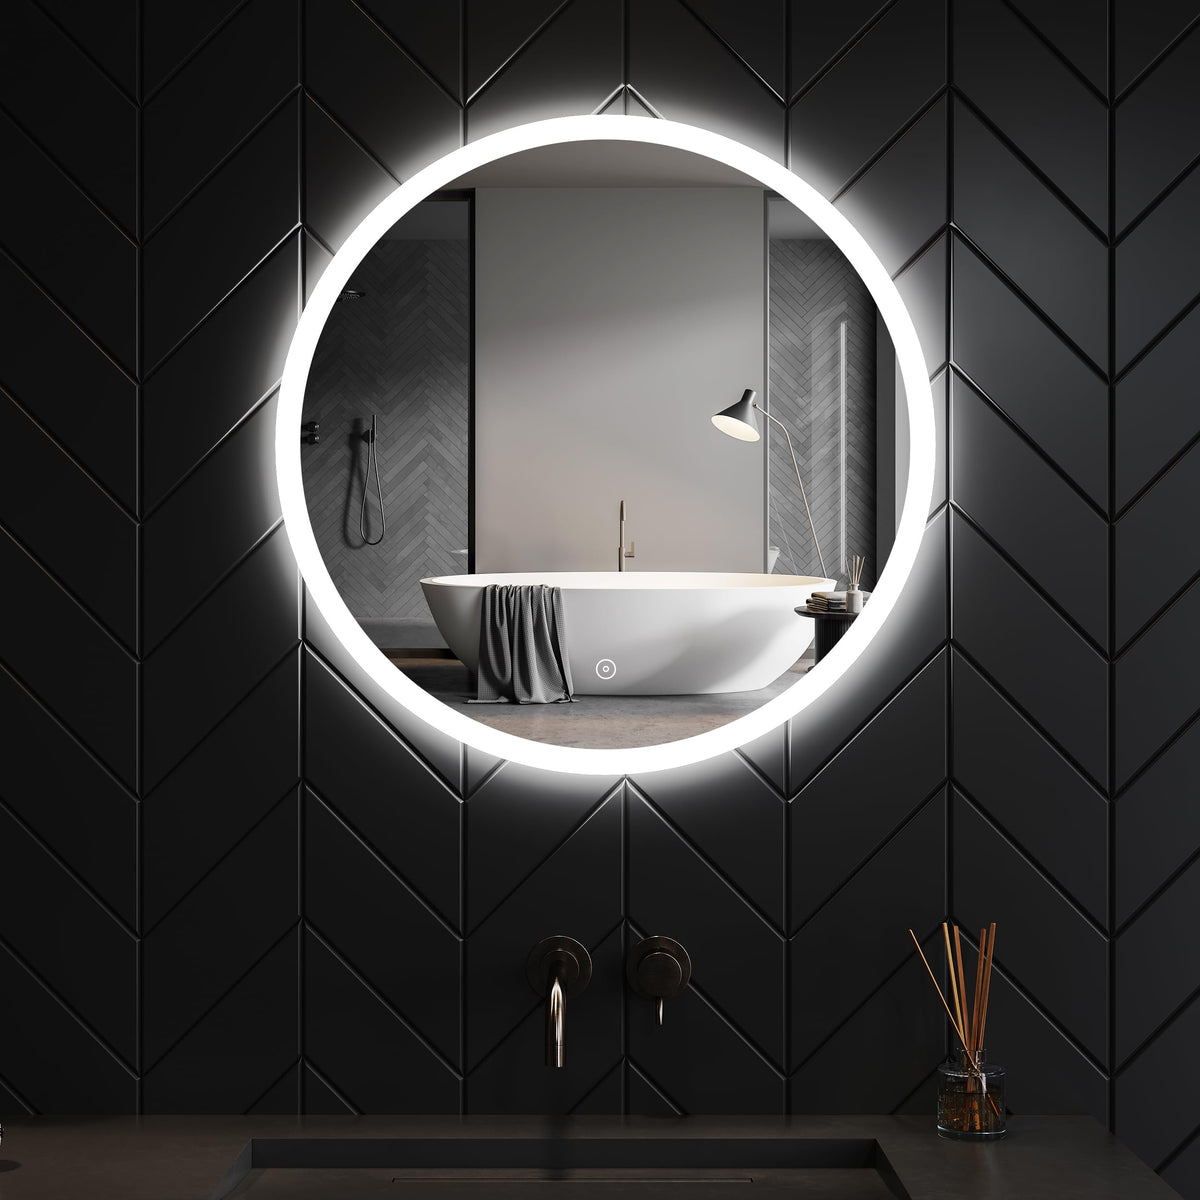 SONNI Runder Badspiegel mit LED-Beleuchtung Beschlagfrei und Touch-Schalter, 60 cm Durchmesser, Kaltweiß 6400K